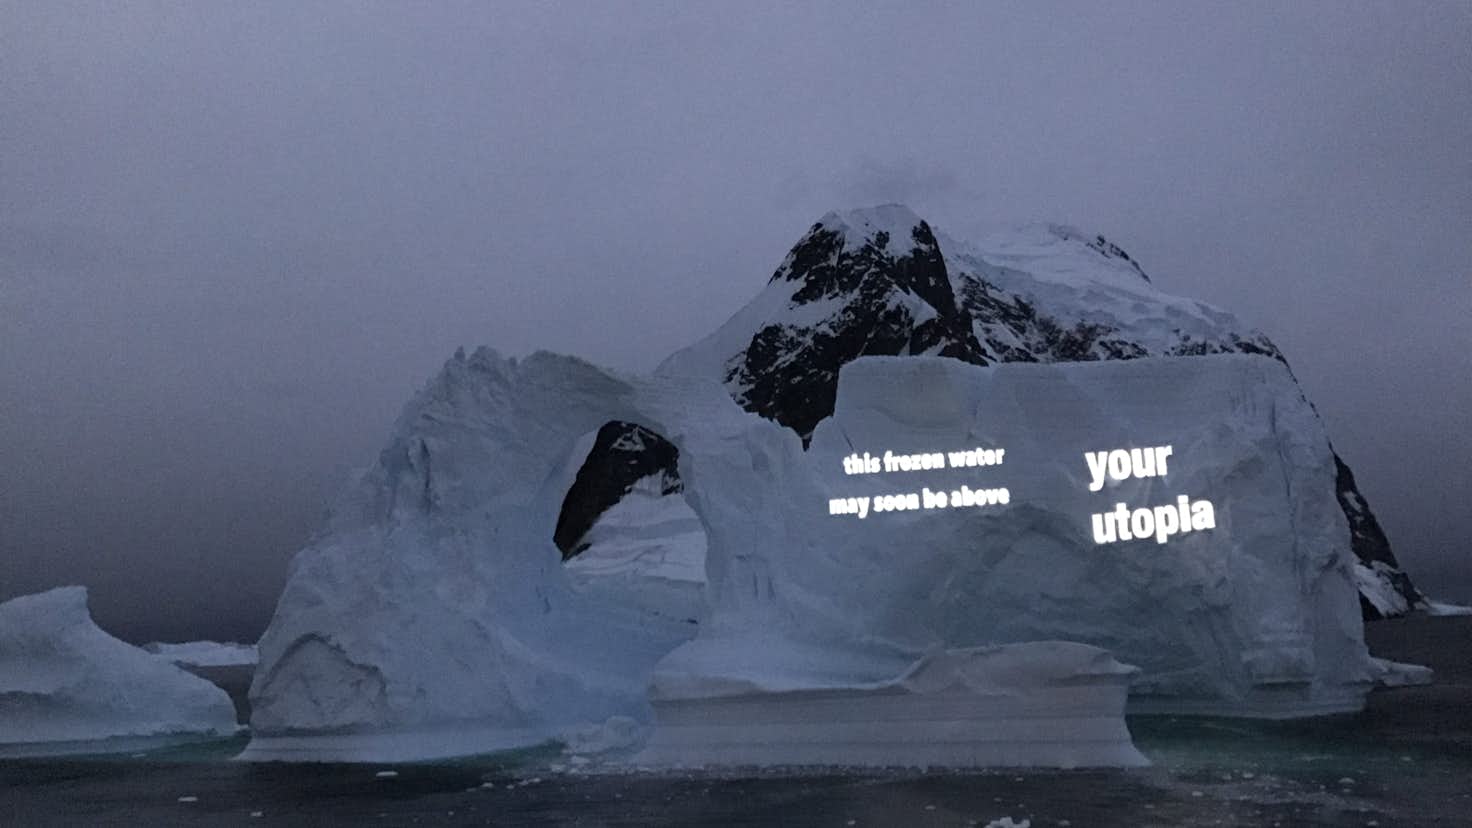 舞台は南極 第1回南極ビエンナーレ で問い直す人類と芸術の関わり 美術手帖